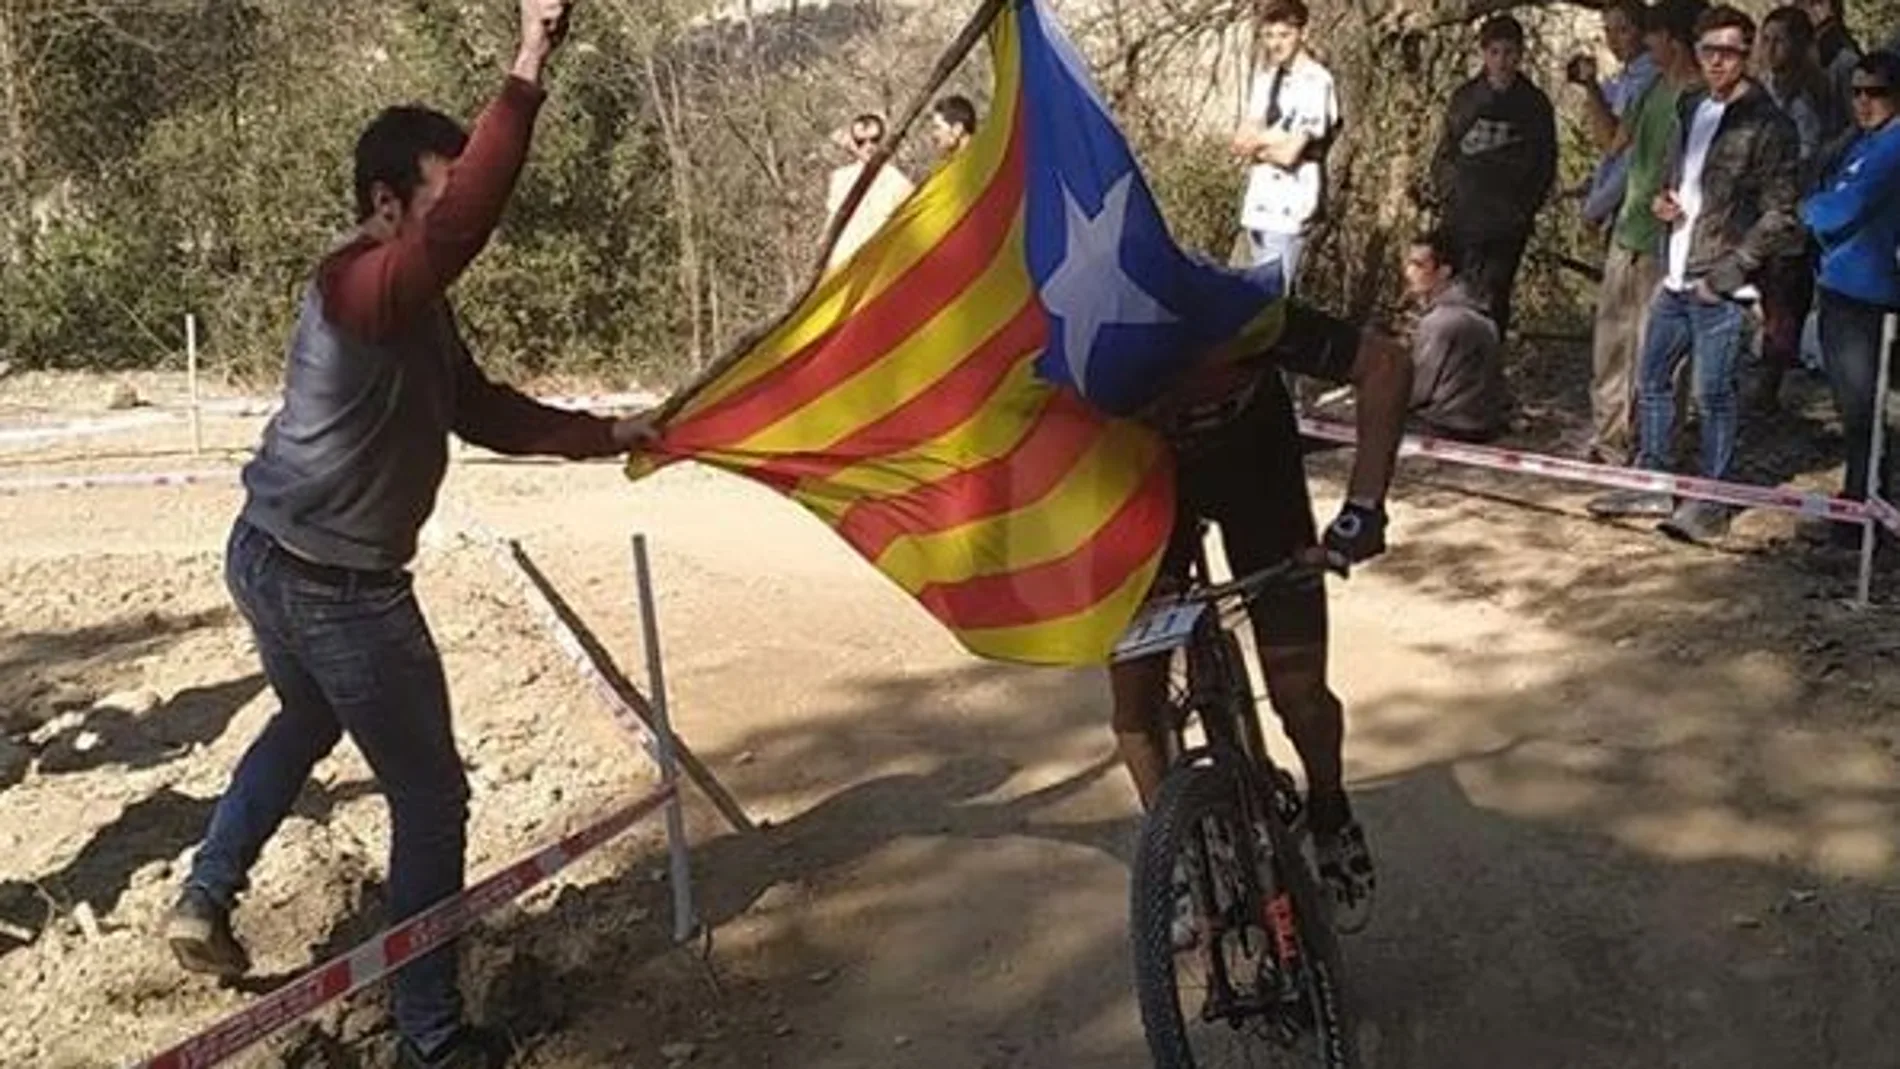 Momento en que un espectador tapa la cara de Carlos Coloma con la bandera estelada / Foto: Instagram jorgesotobajo